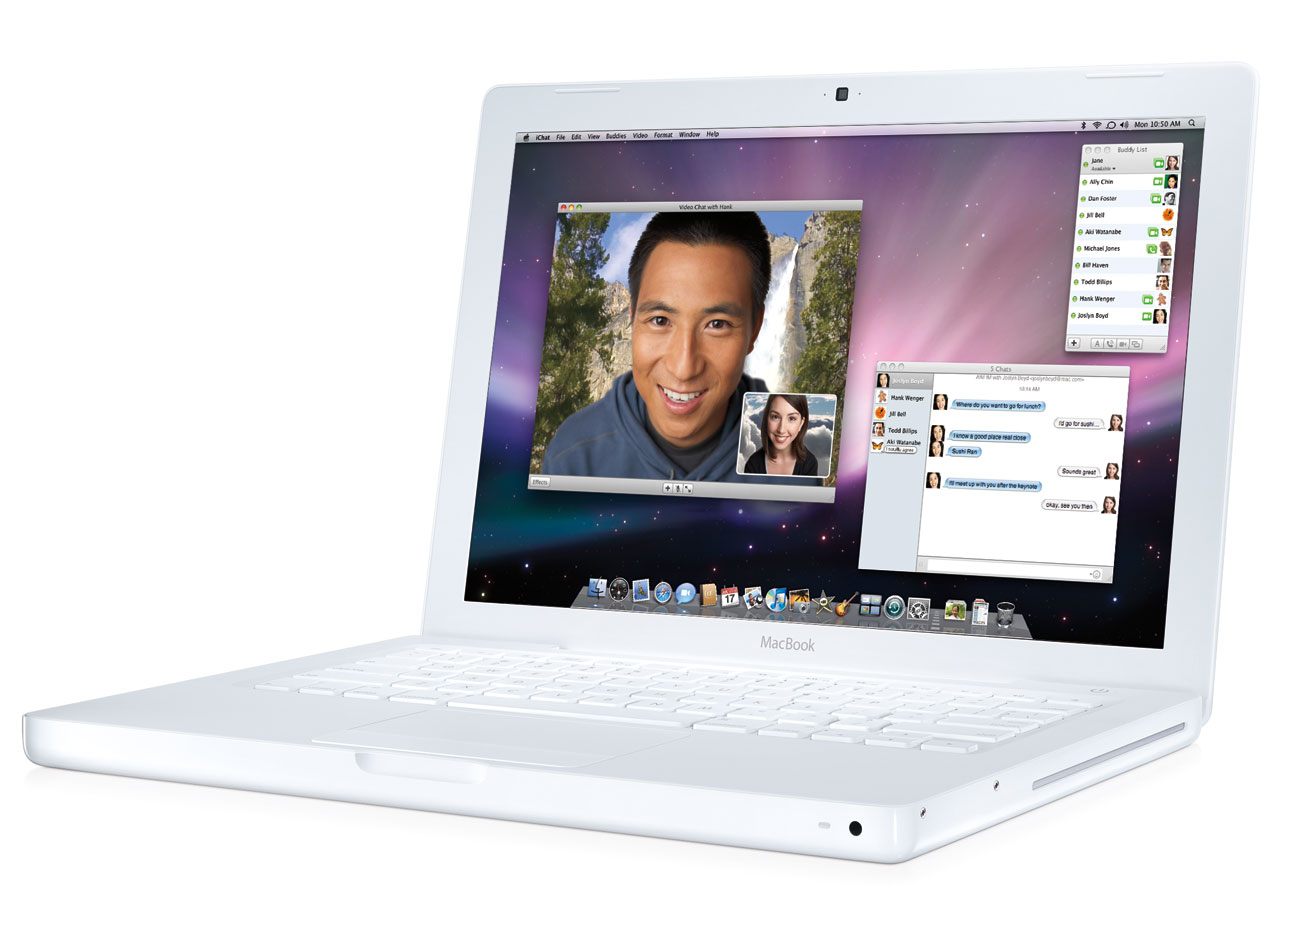  SATILDI !!! Apple MacBook 13,3-inç 2.1GHz Intel Core 2 Duo